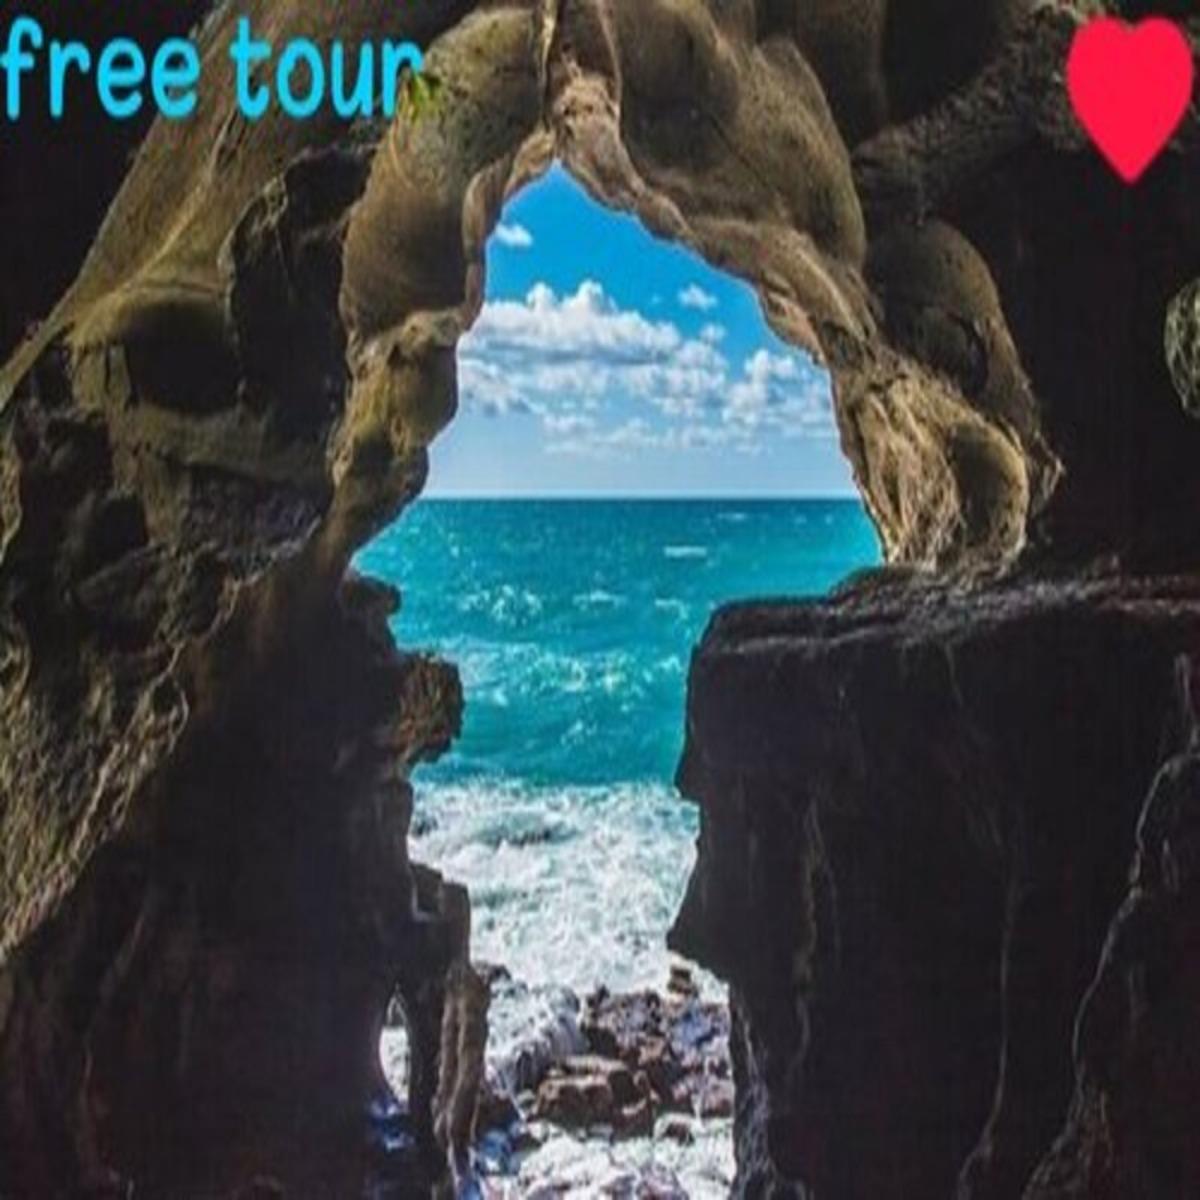 Tangier Free Walking Tour